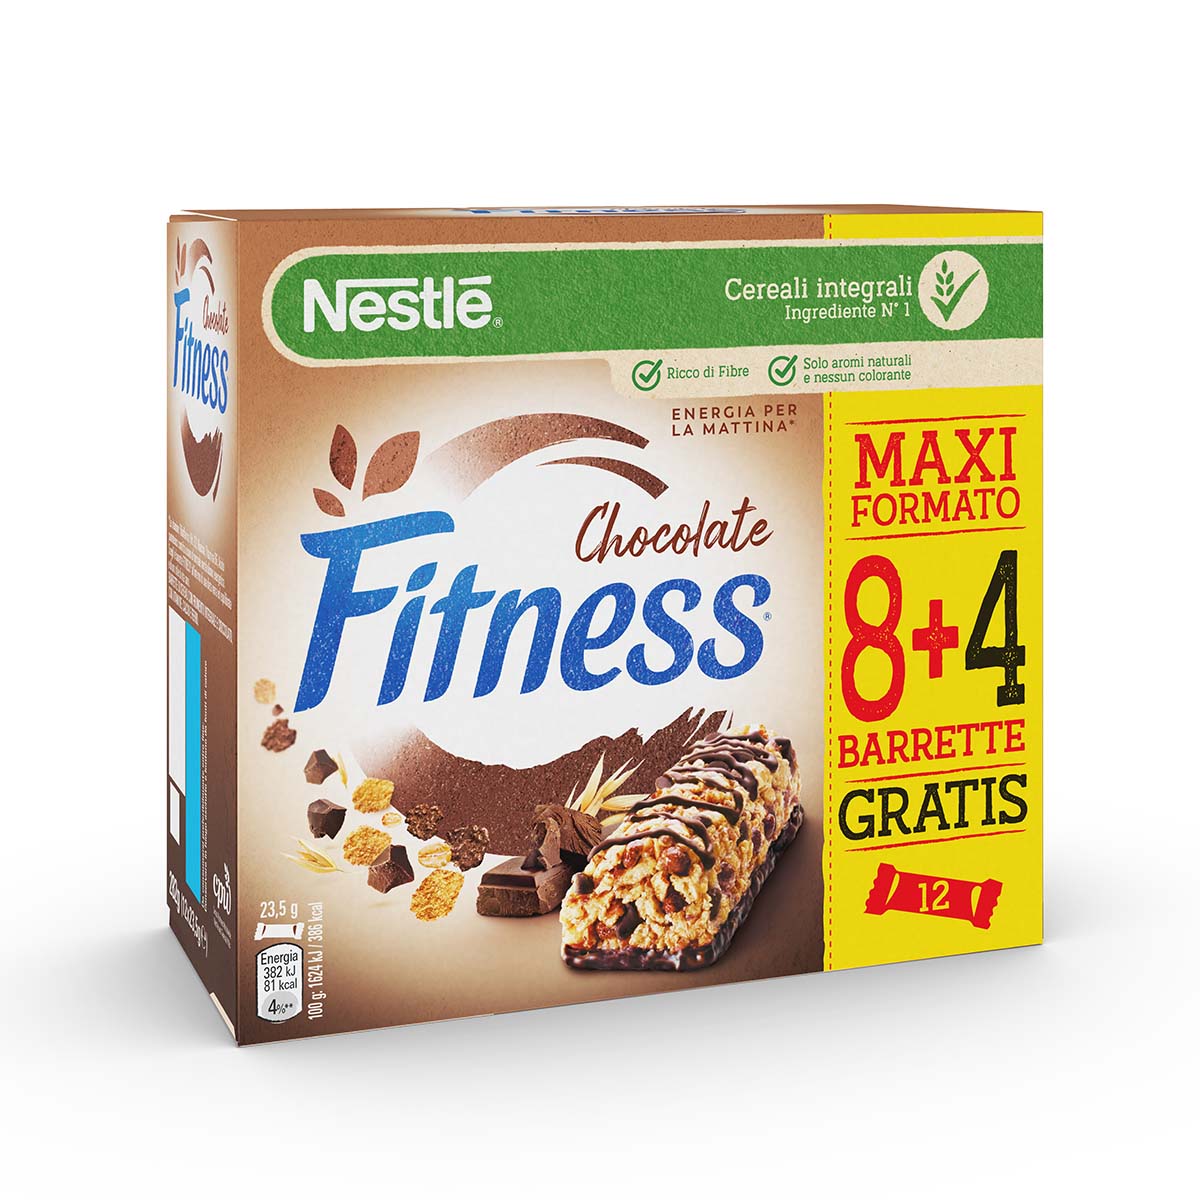 Fitness CIOCCOLATO Barrette di cereali con frumento integrale e cioccolato, con 5 vitamine, calcio e ferro x8+4